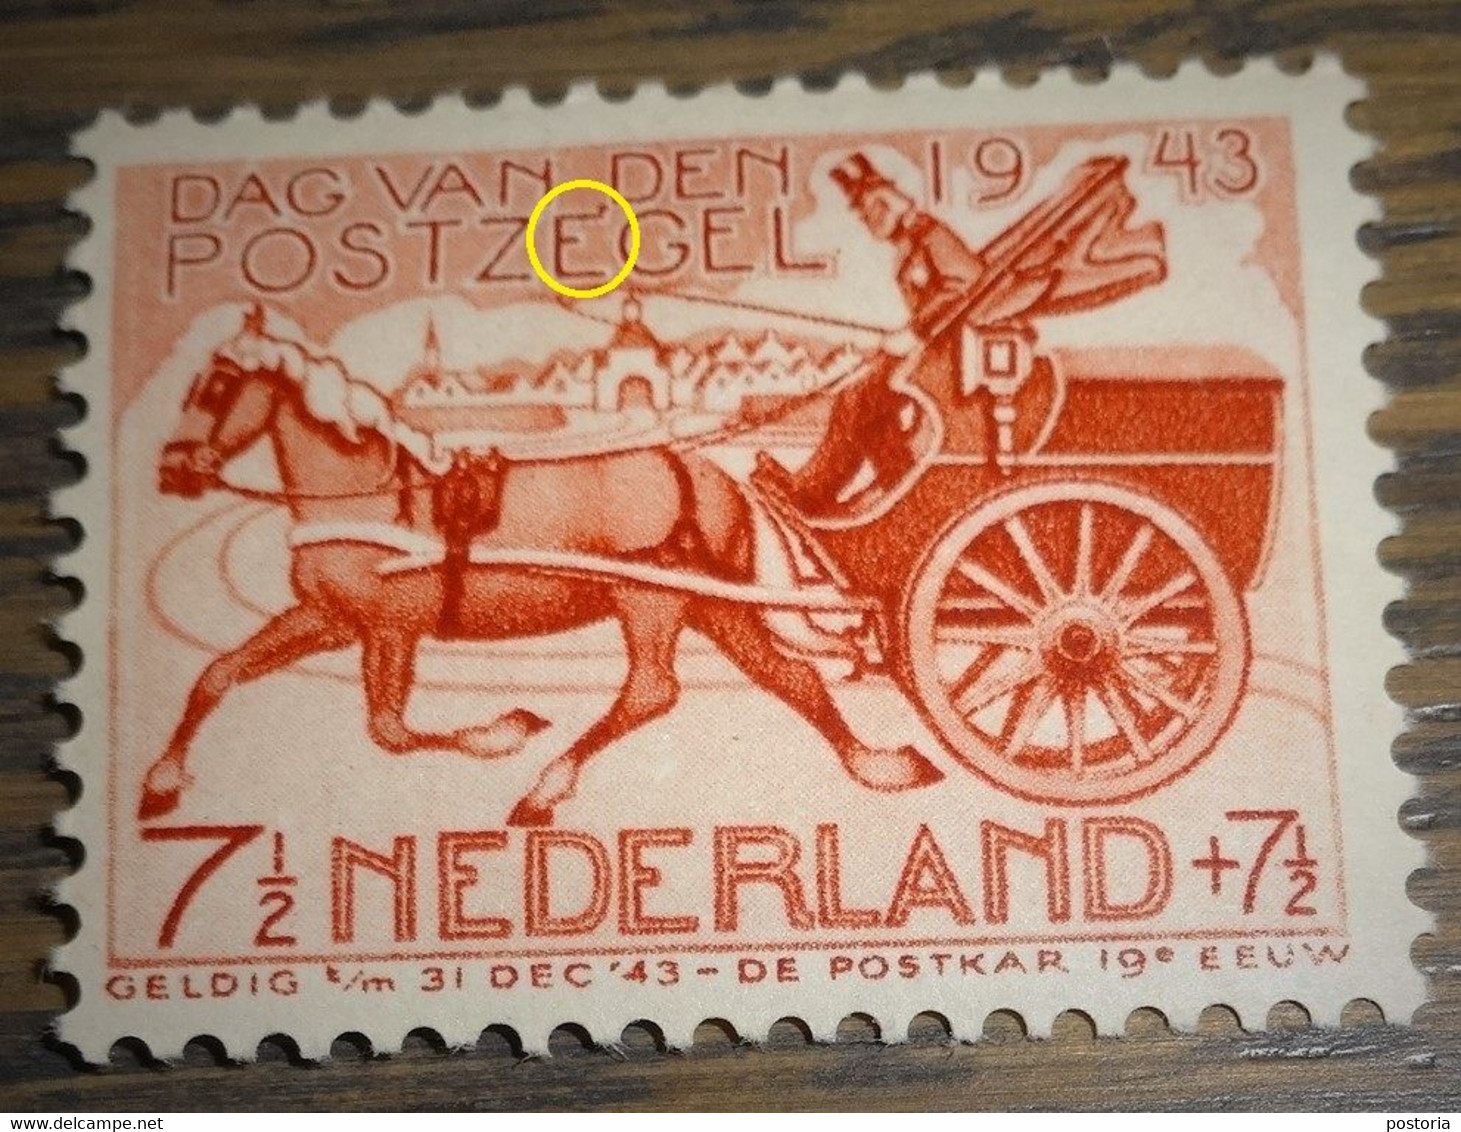 Nederland - MAST - 422 P - 1943 - Plaatfout - Postfris - Puntje Boven 1e E Van POSTZEGEL - Abarten Und Kuriositäten